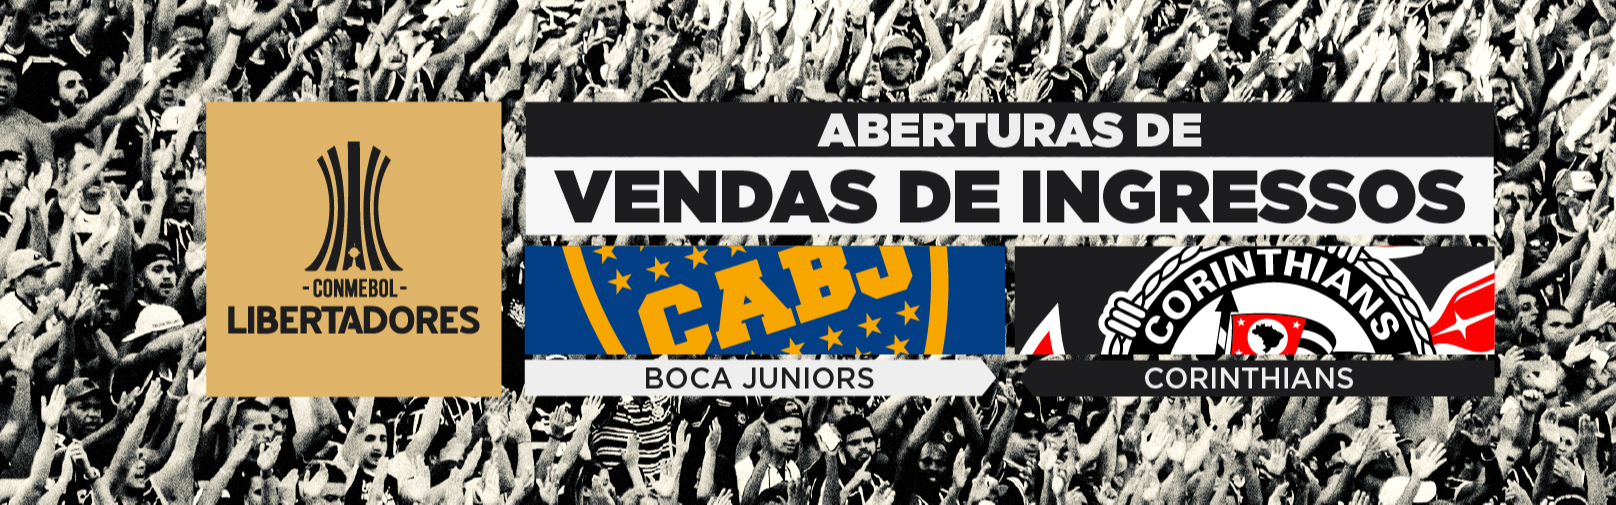 CONMEBOL Libertadores 2022 – Vendas de ingressos para Boca Juniors X Corinthians (17/5), no La Bombonera (Buenos Aires, ARG)